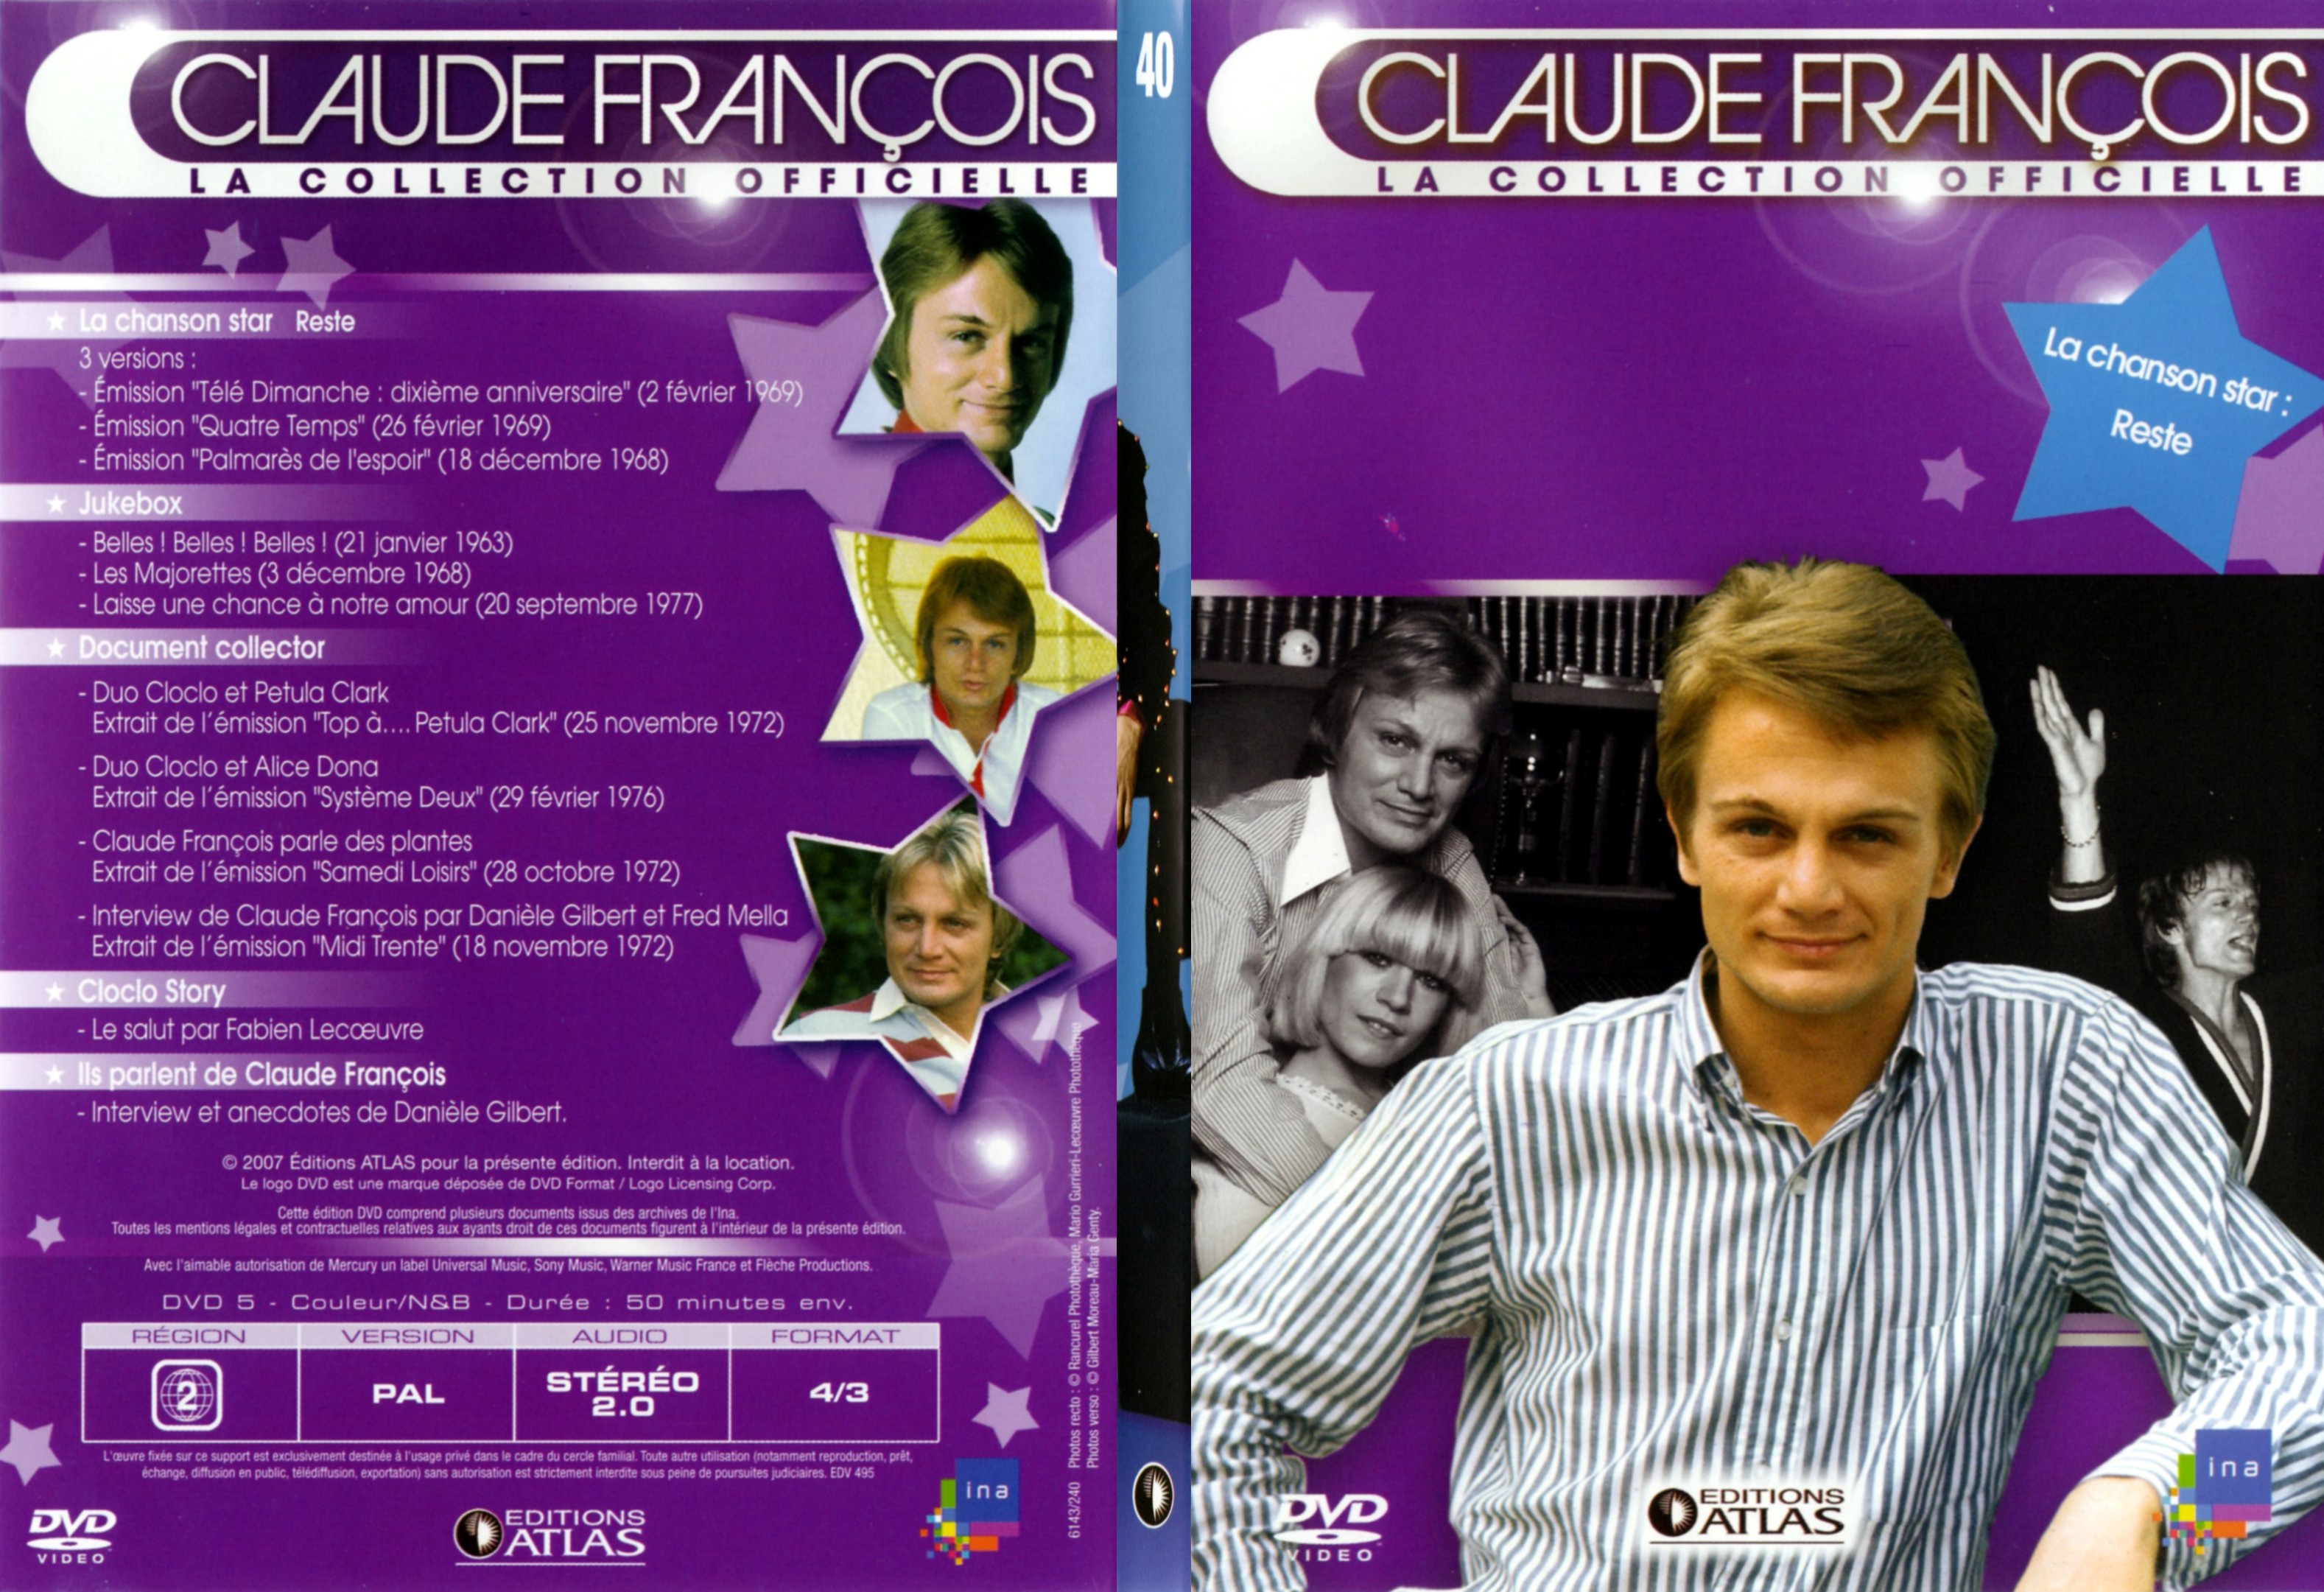 Jaquette DVD Claude francois le collection officielle vol 40 - SLIM